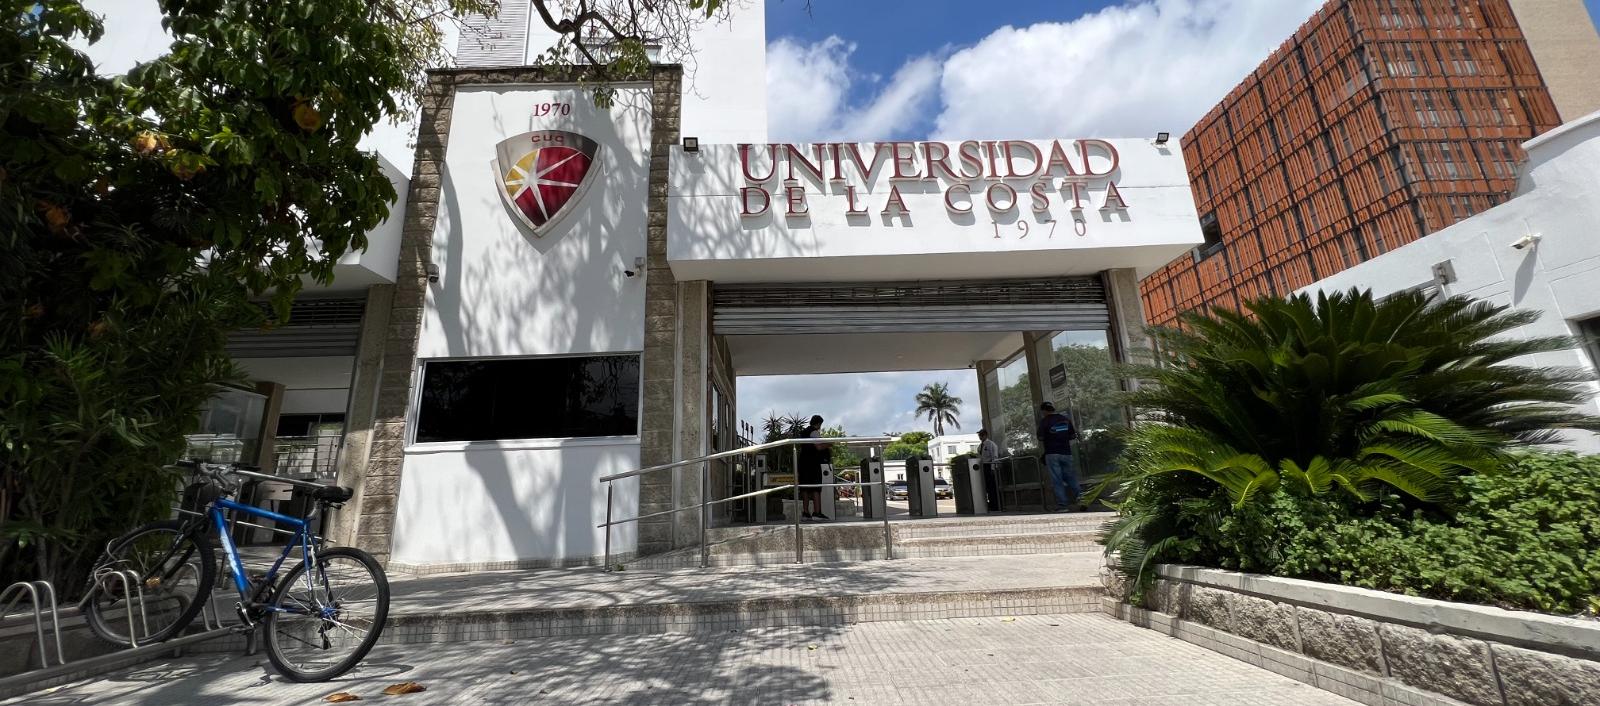 Universidad de la Costa.